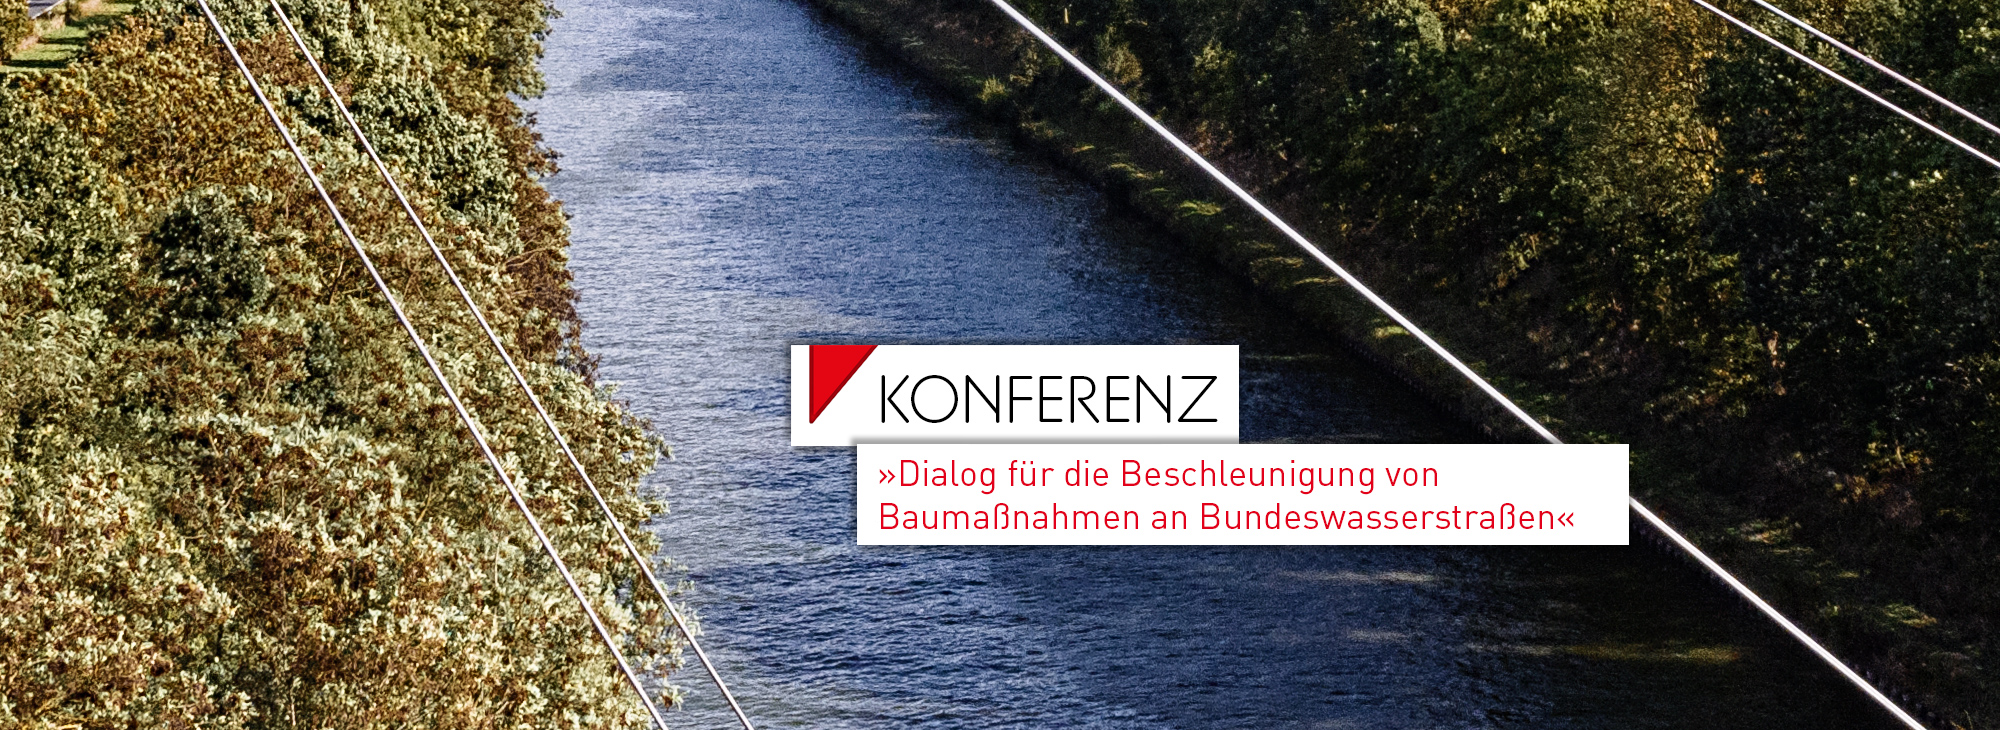 GRBV | Konferenz – Dialog für die Beschleunigung von Baumaßnahmen an Bundeswasserstraßen 